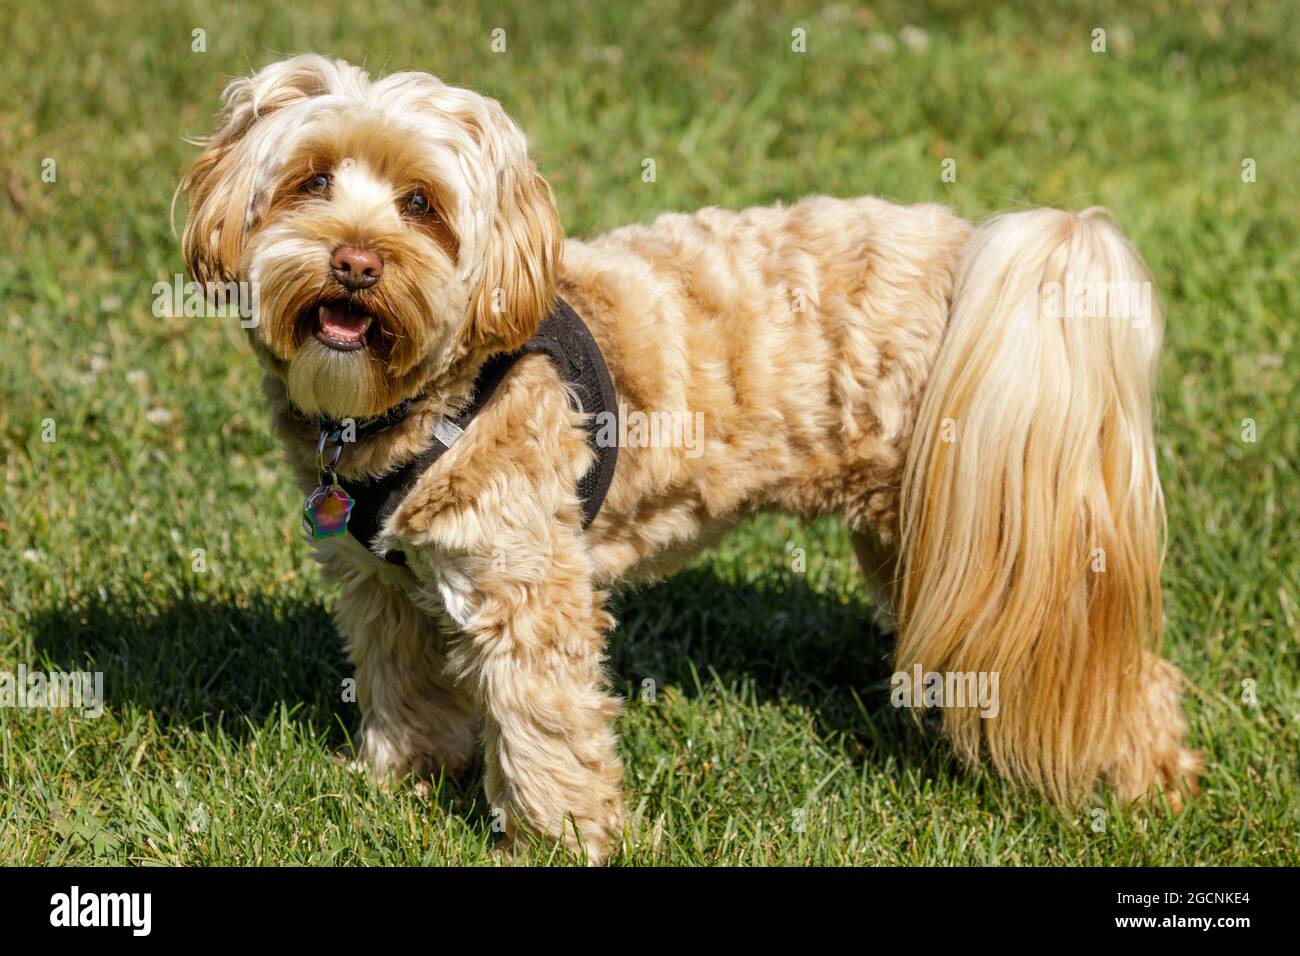 2 Jahre Alter Daisy Dog. Es gibt drei Hunderassen, aus denen der Daisy Dog besteht – den Bichon Frise, Pudel und den Shih-tzu. Stockfoto